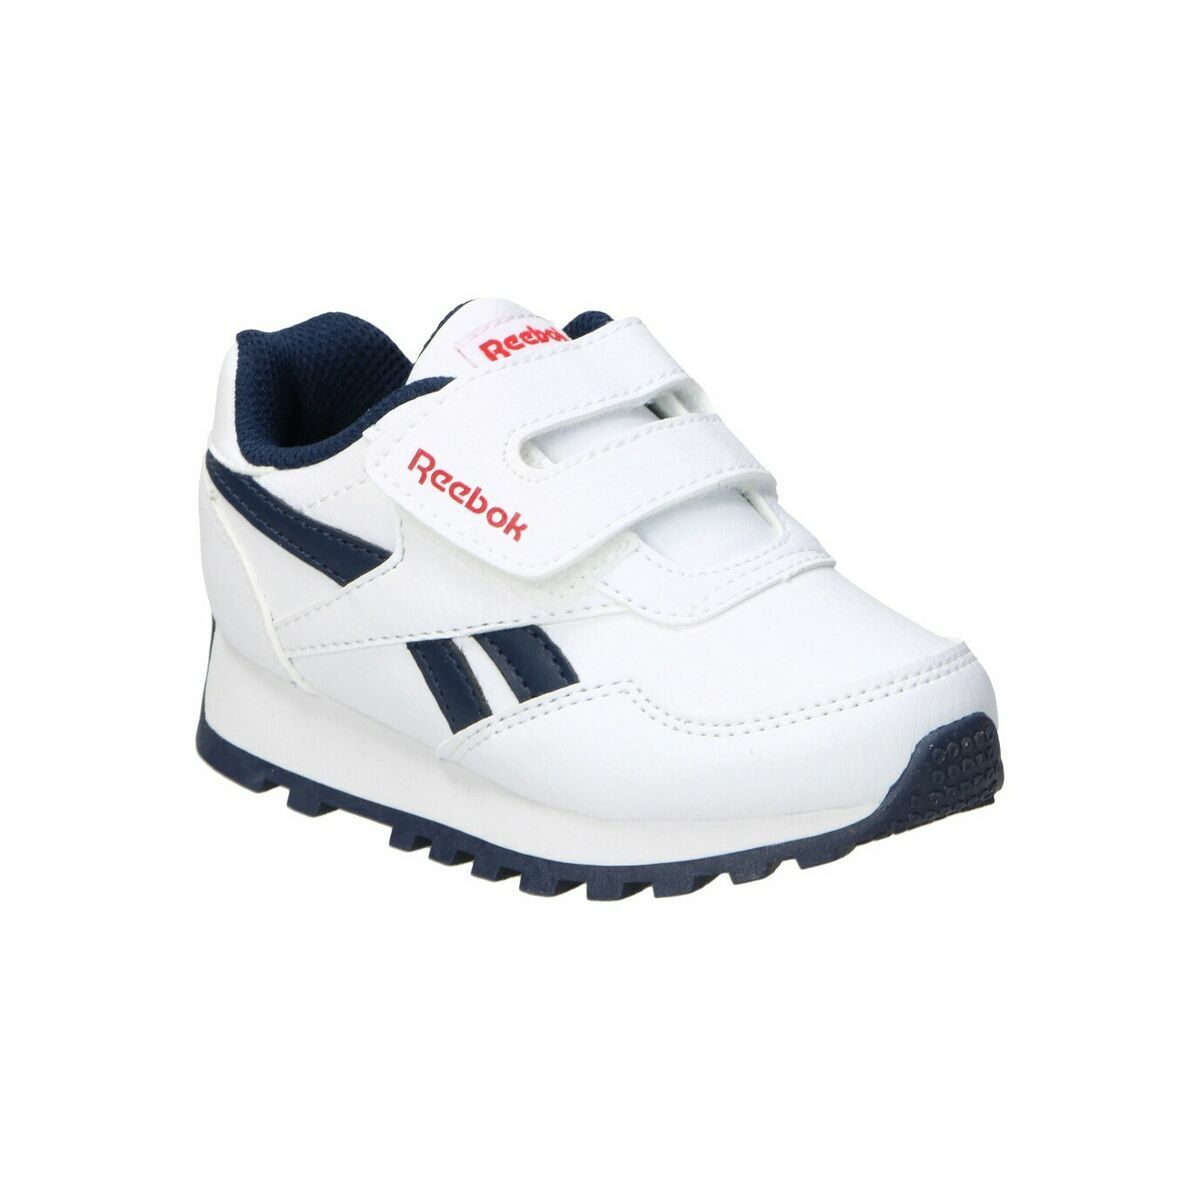 Chaussures de Sport pour Enfants Reebok REWIND GY1739 Blanc